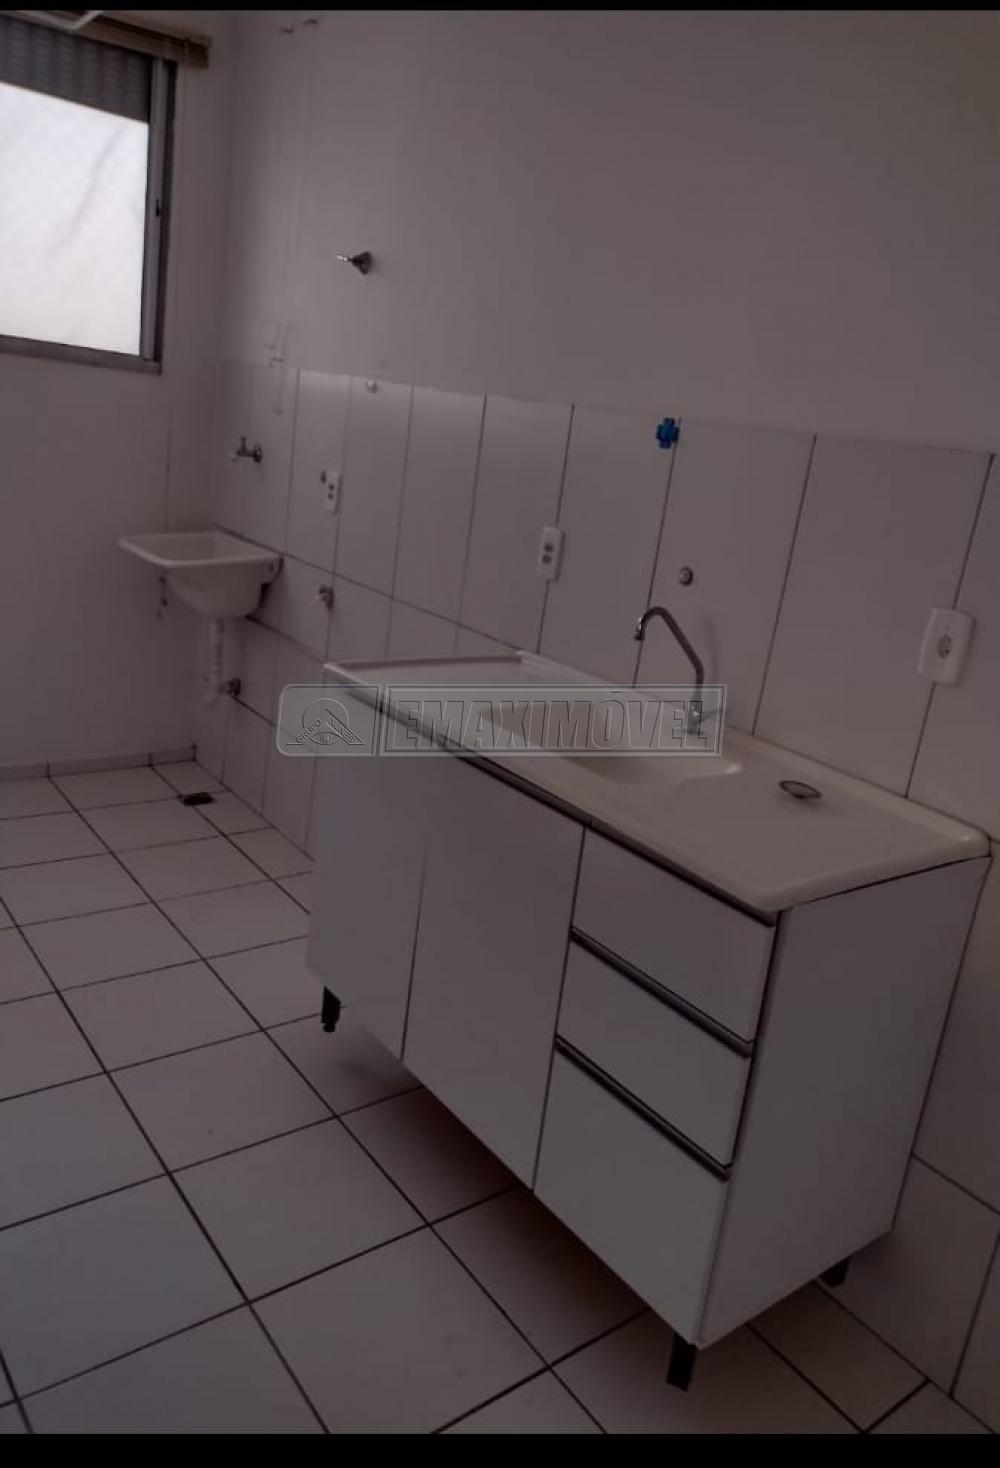 Comprar Apartamento / Padrão em Sorocaba R$ 150.000,00 - Foto 6